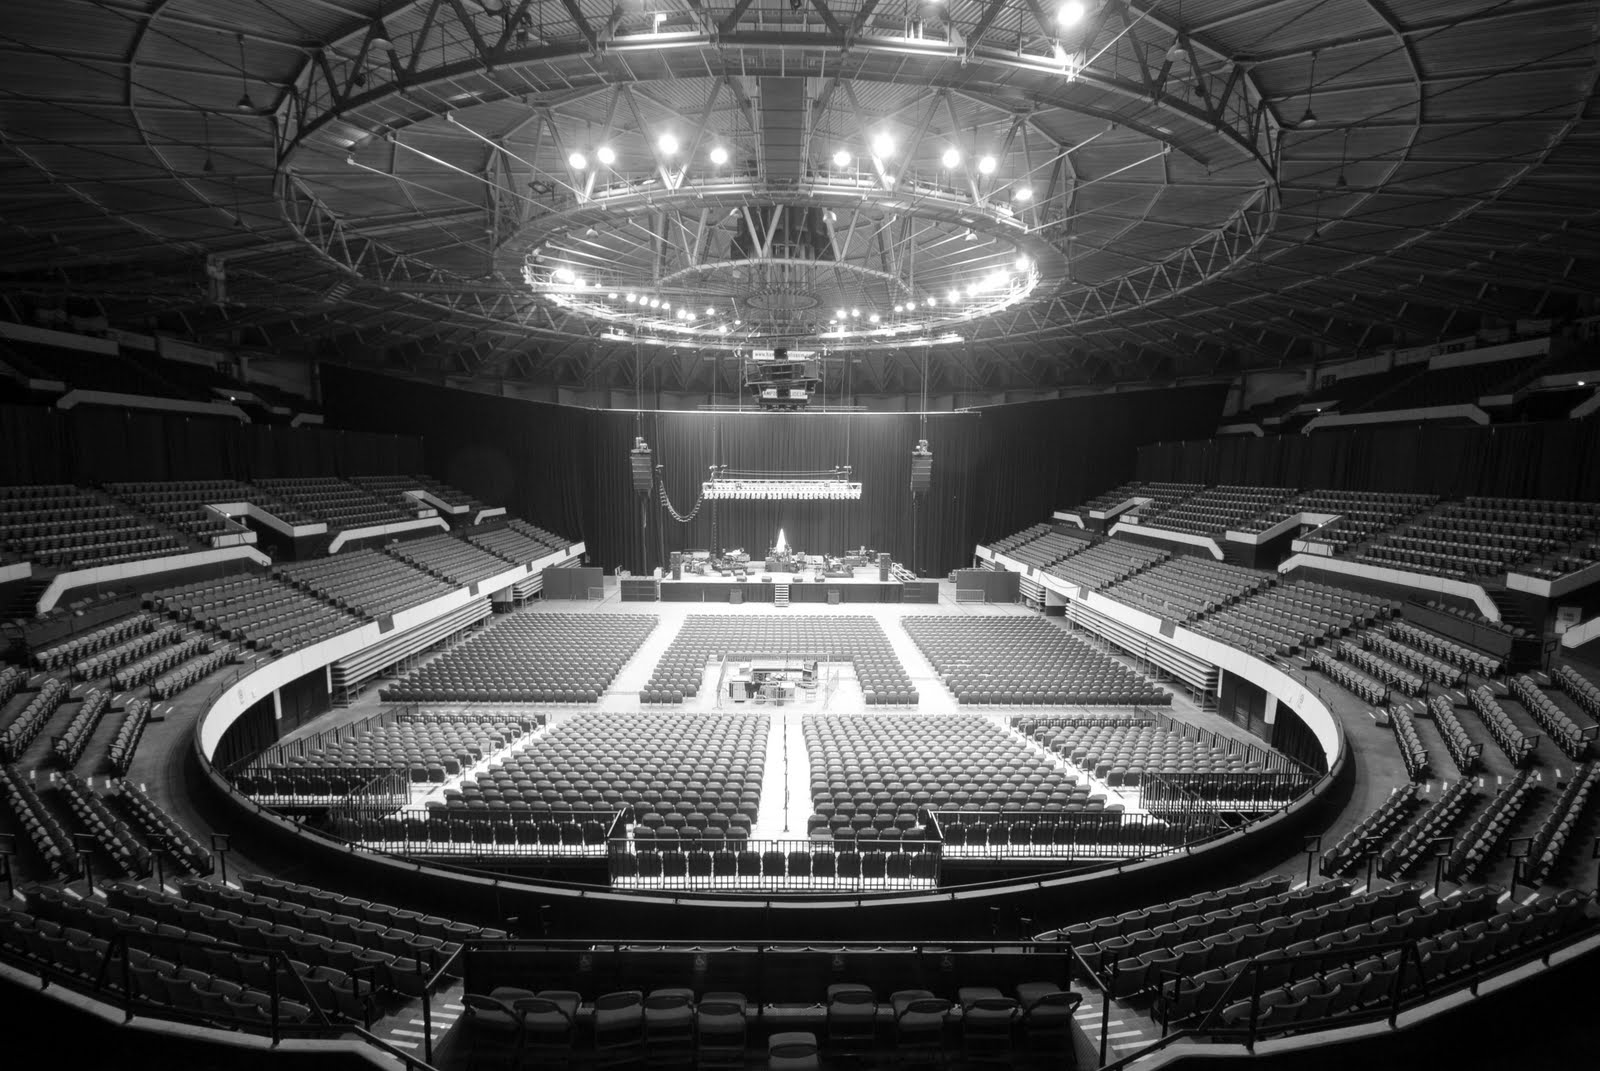 20131018/19/20 Hampton Coliseum, Hampton, VA